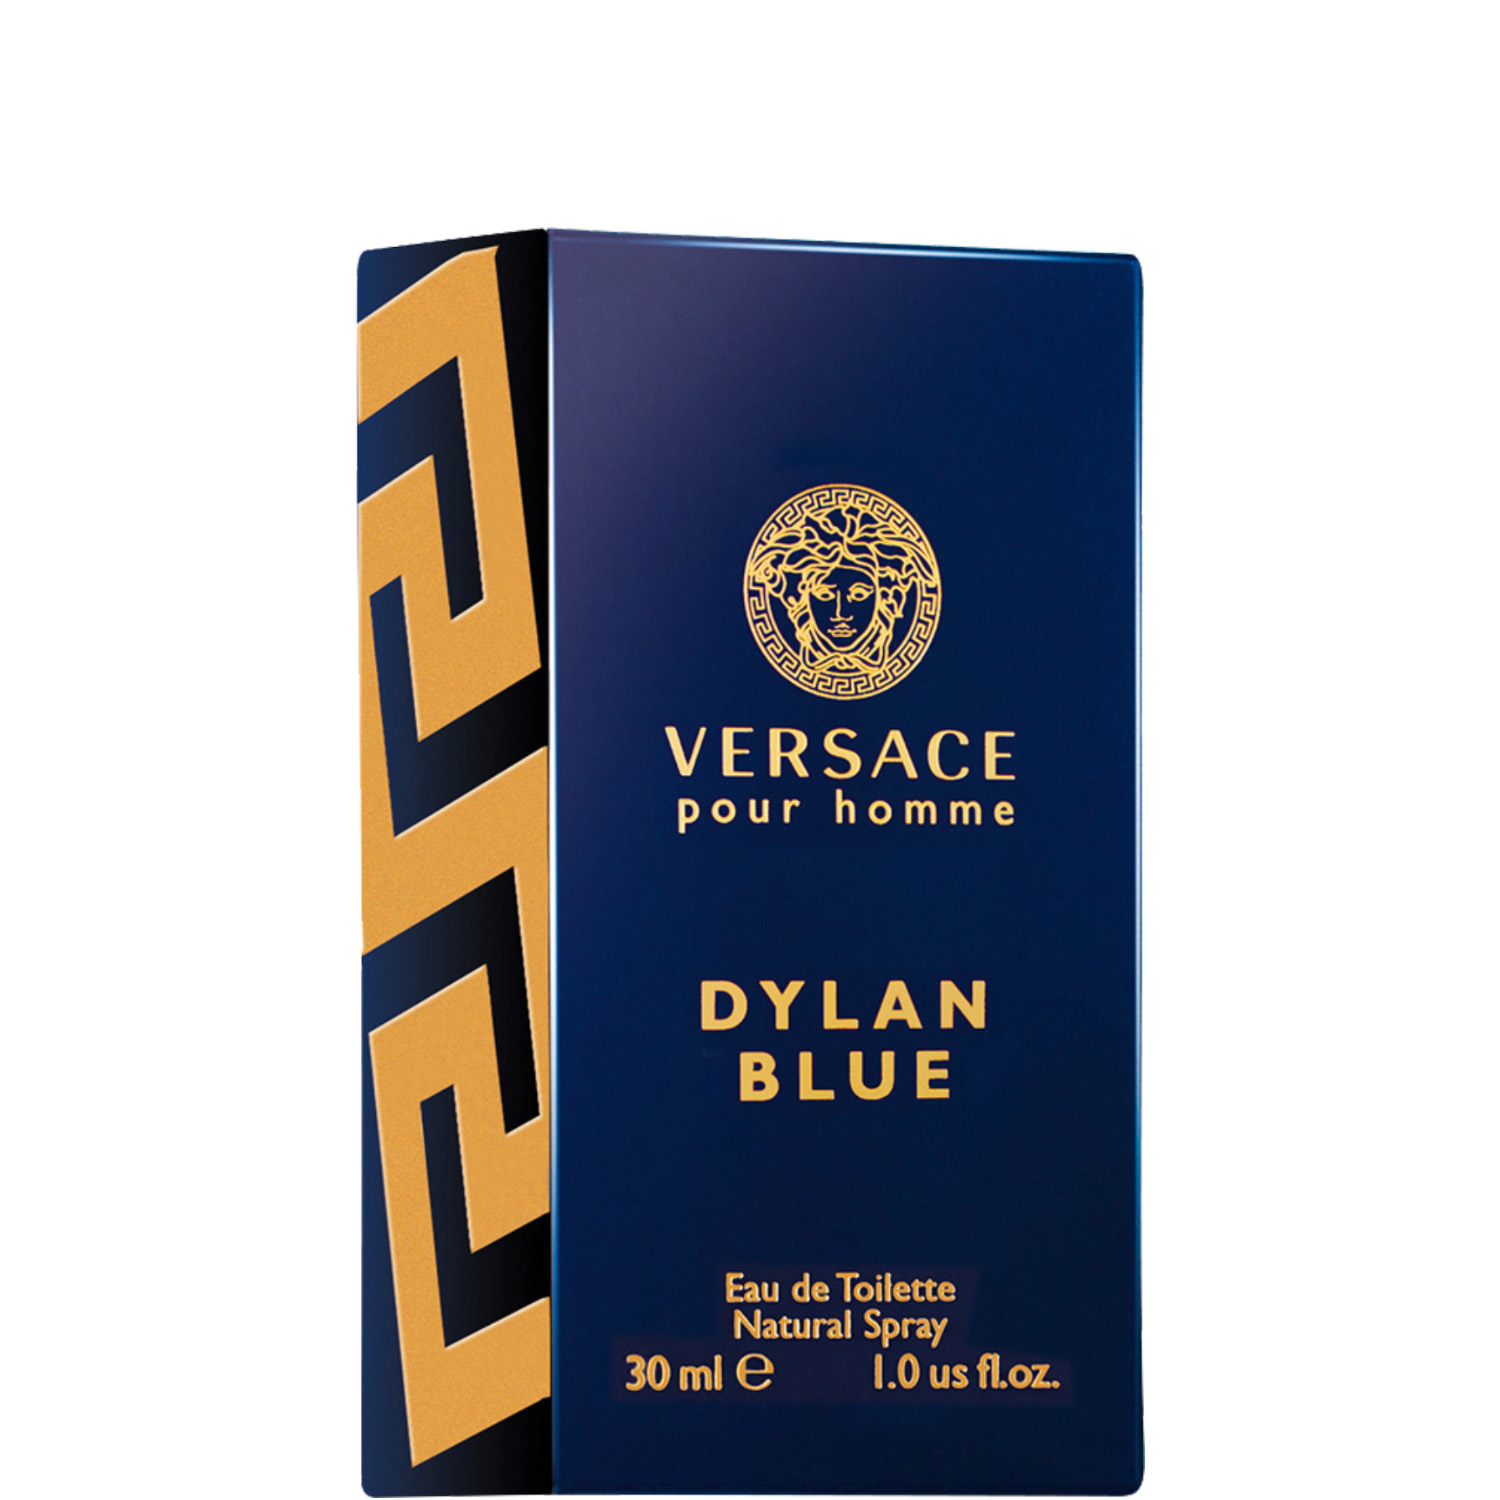 Versace Dylan Blue Eau de Toilette 30ml